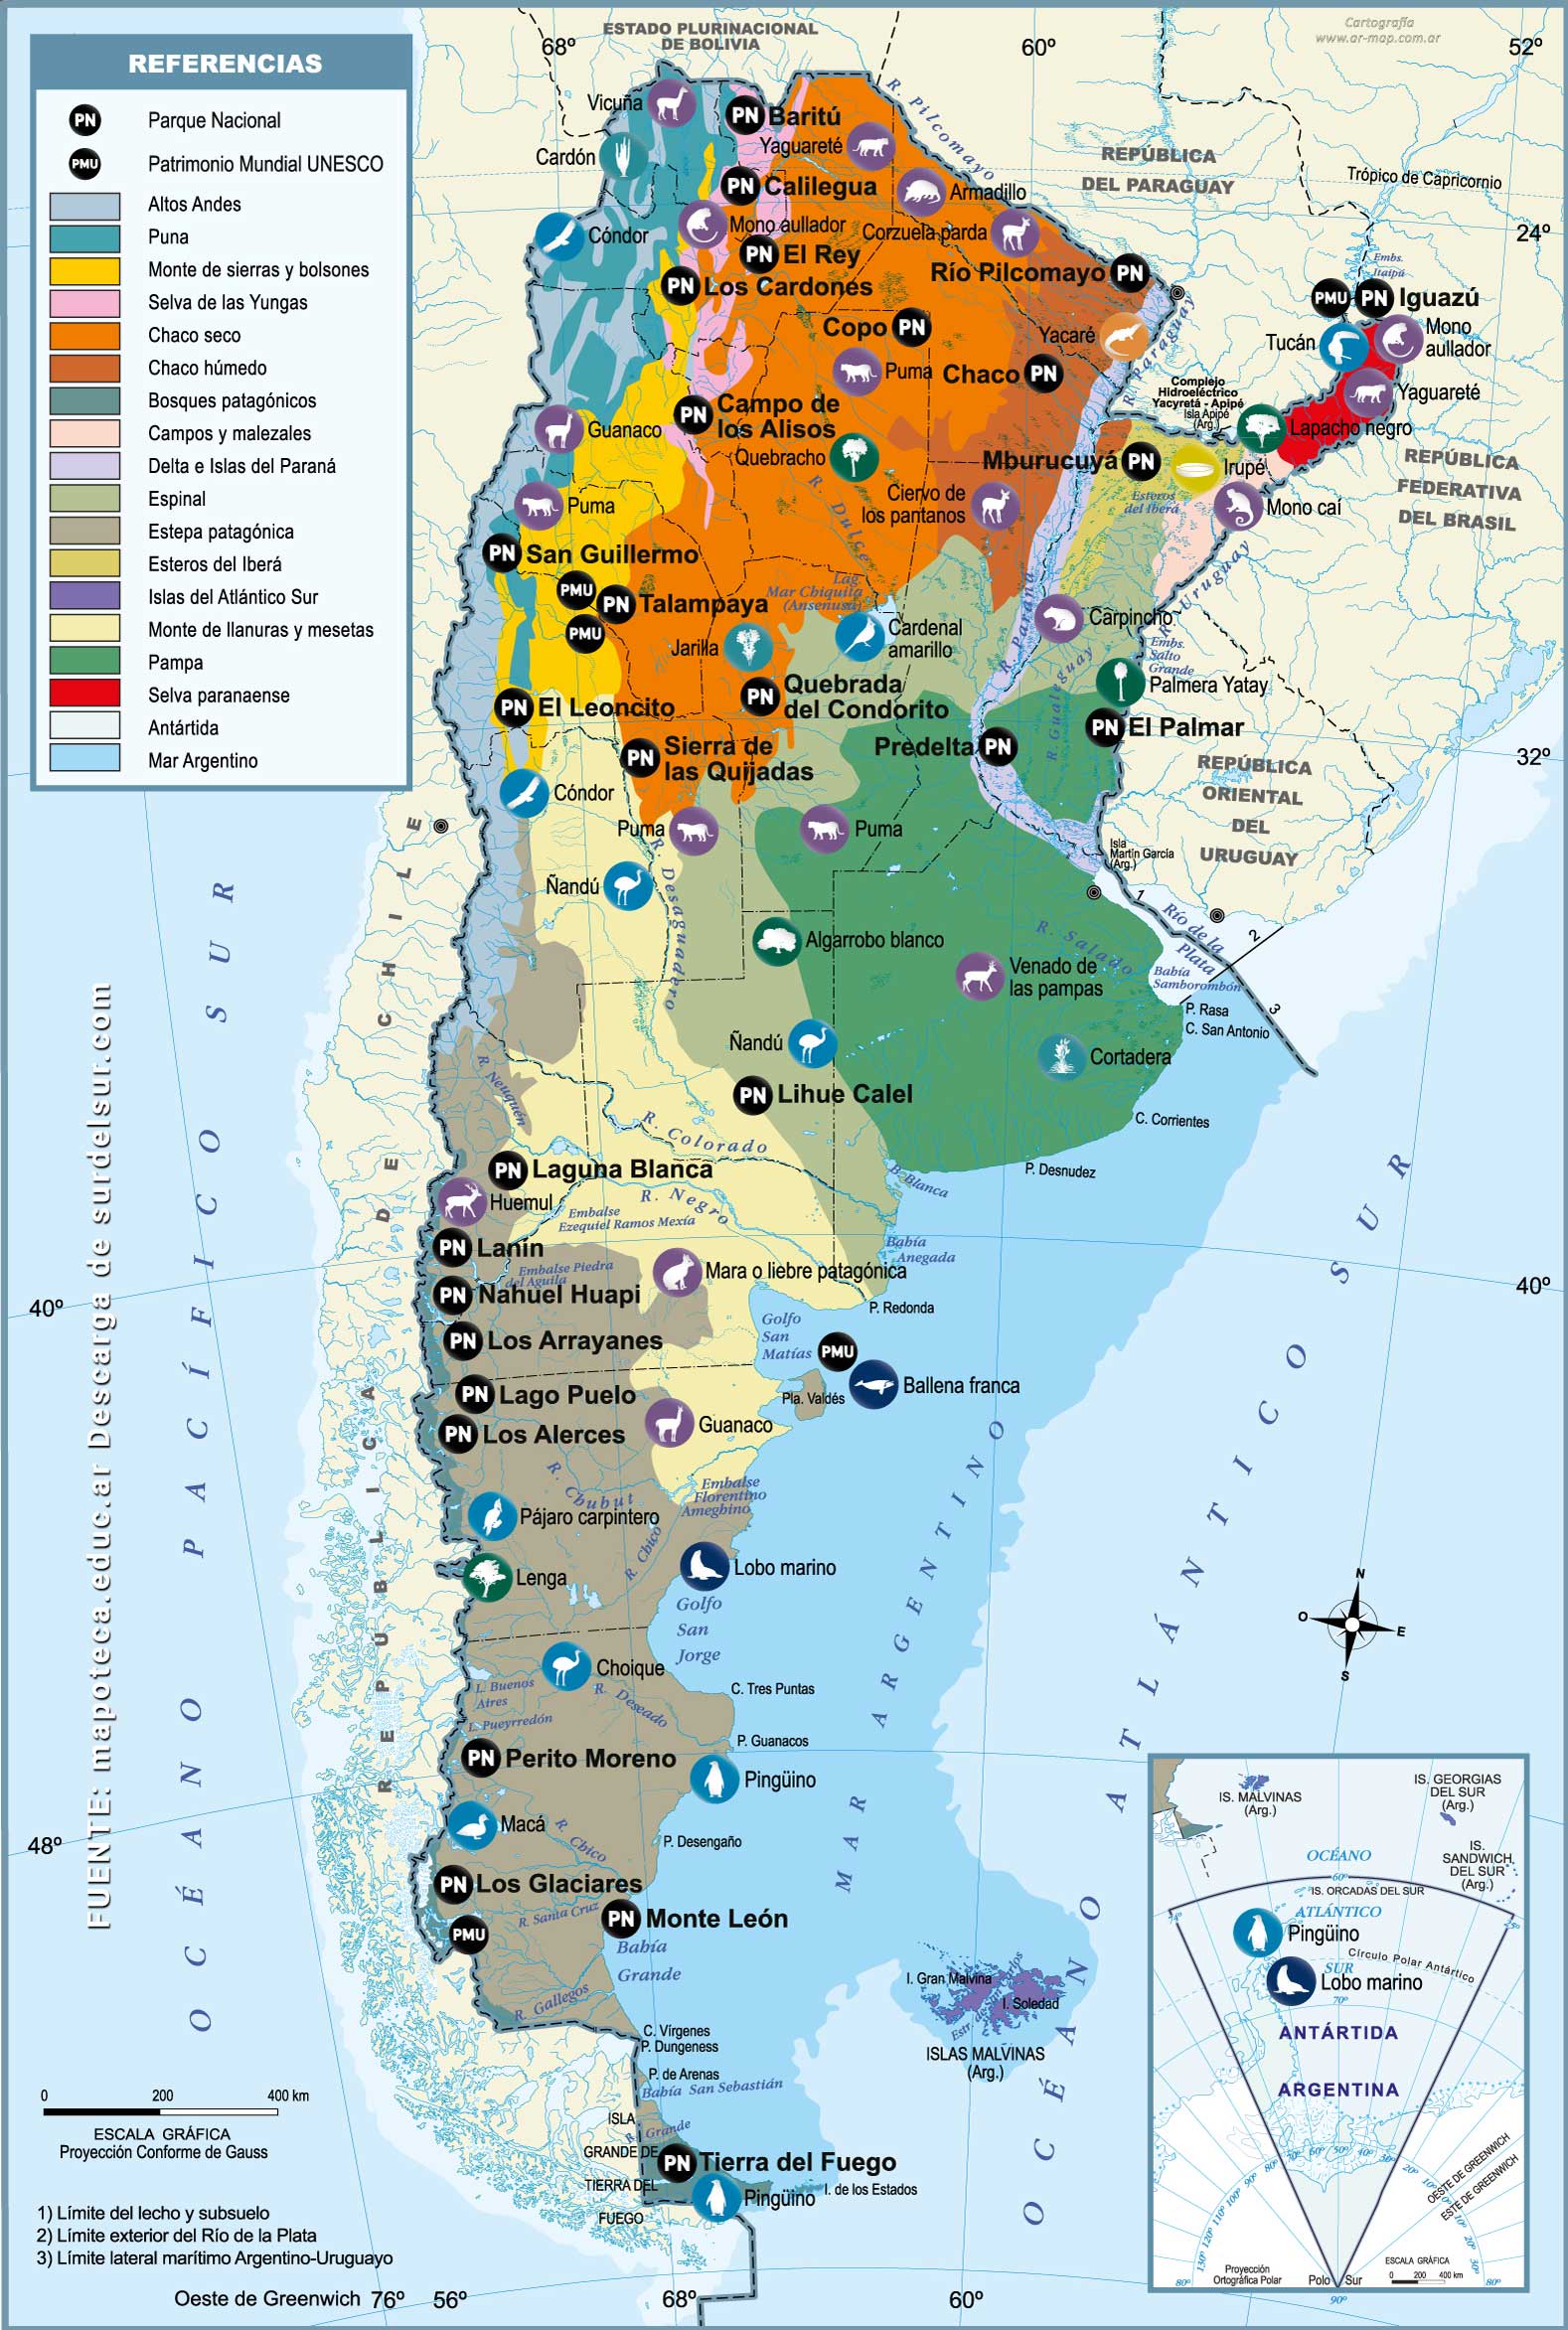 Mapa de Argentina ambiental
con flora y fauna emblemática. Además, contiene la ubicación de los Parques Nacionales y los sitios naturales distinguidos por la UNESCO como Patrimonio Mundial de la Humanidad